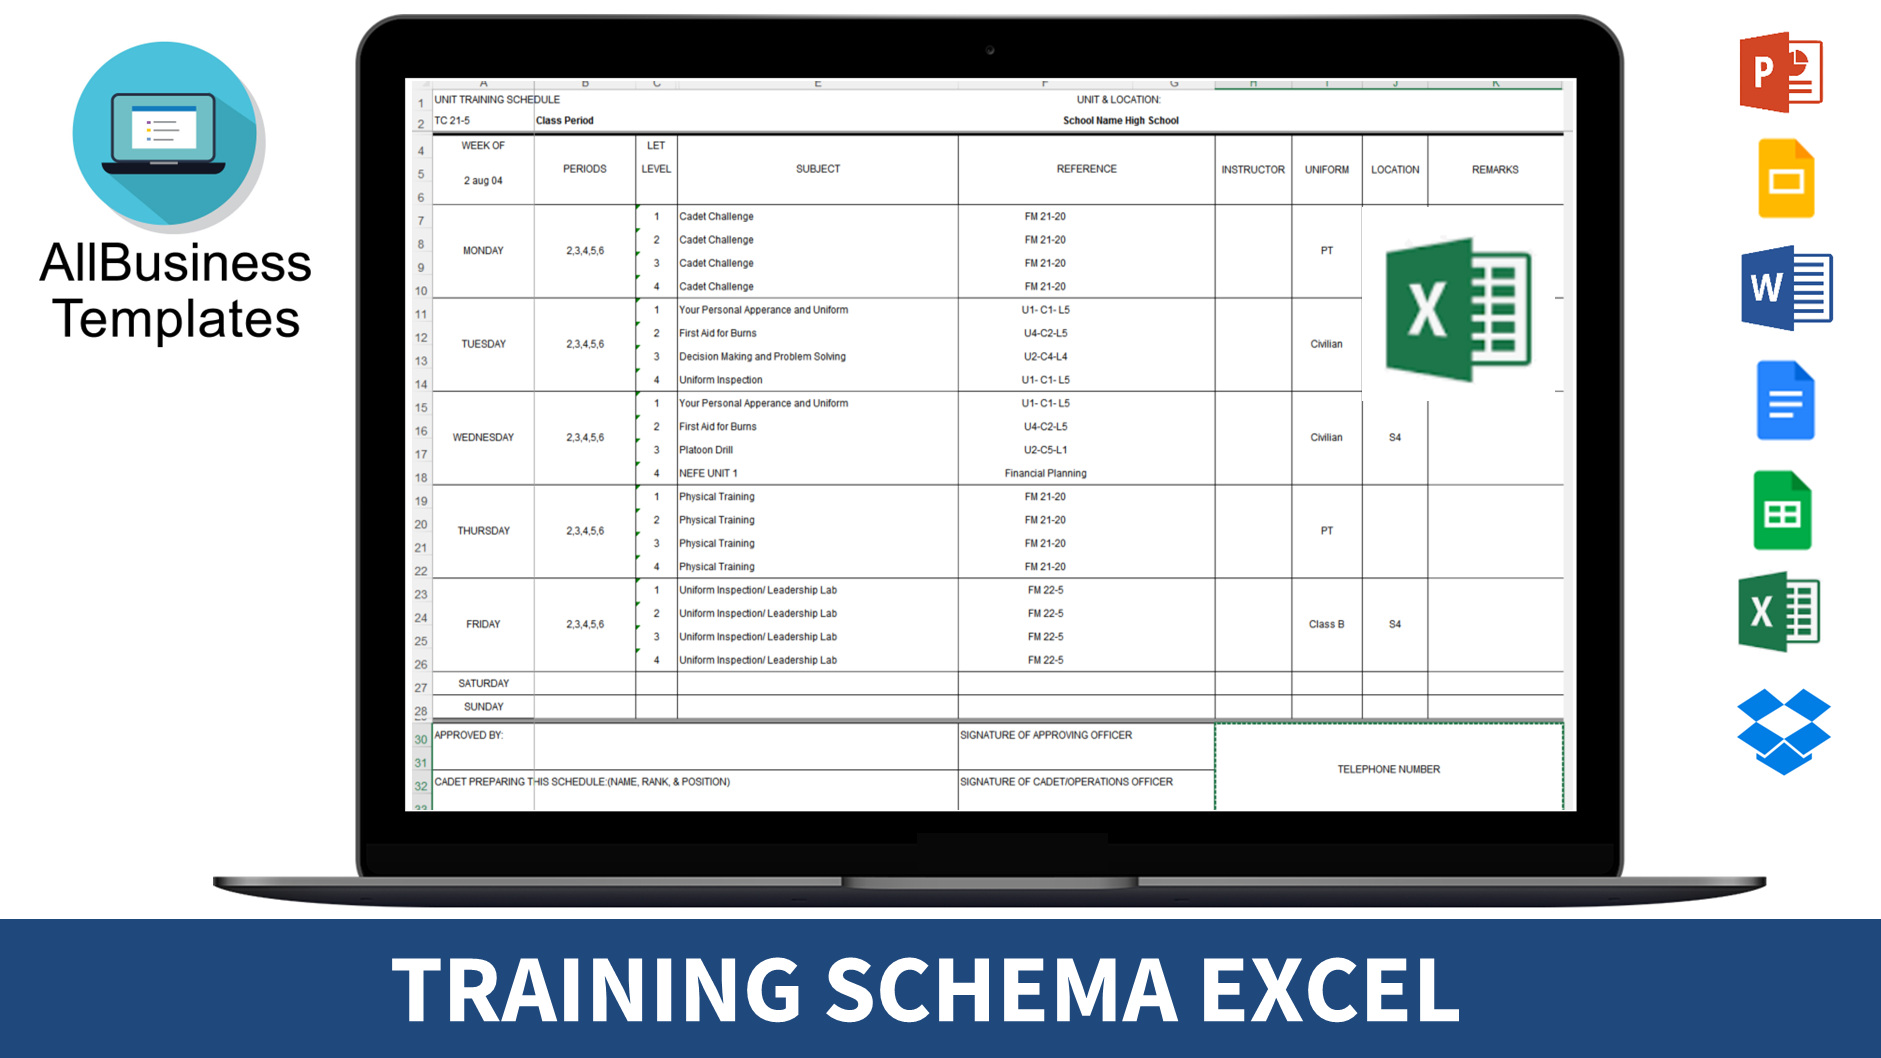 Training Schema Excel main image